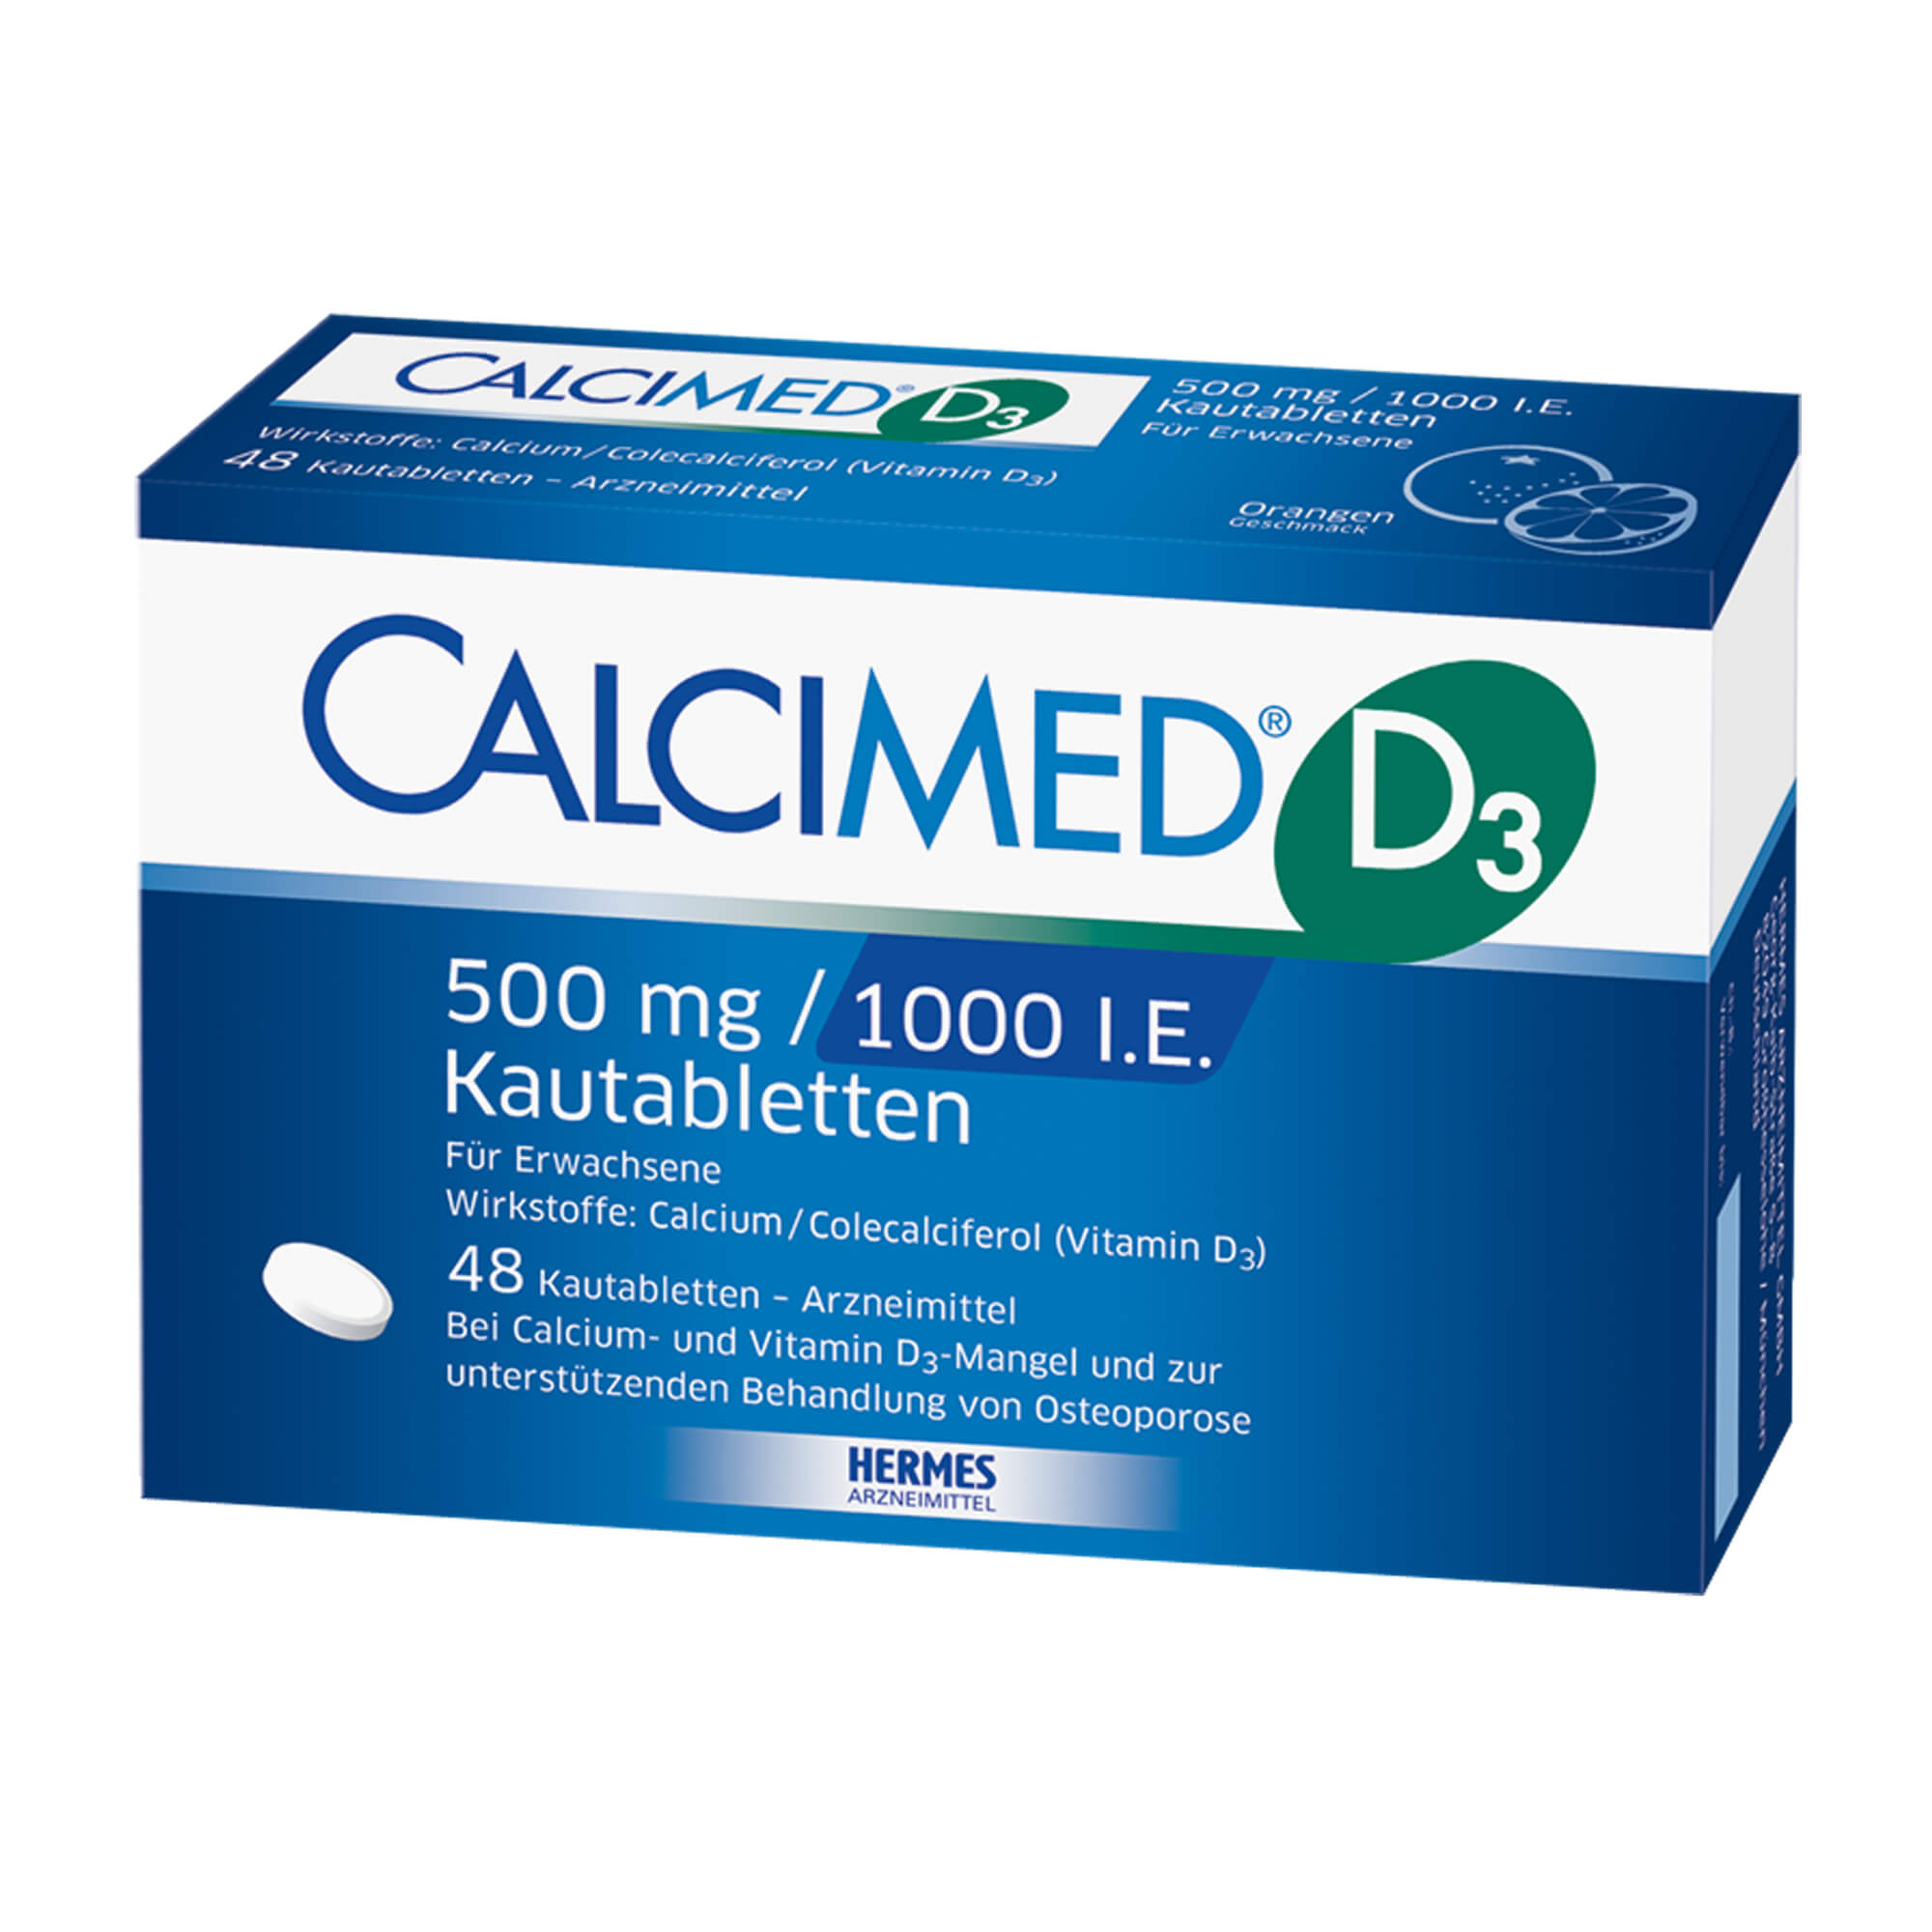 Calcium-Vitamin D3-Präparat. Mit Orangengeschmack.